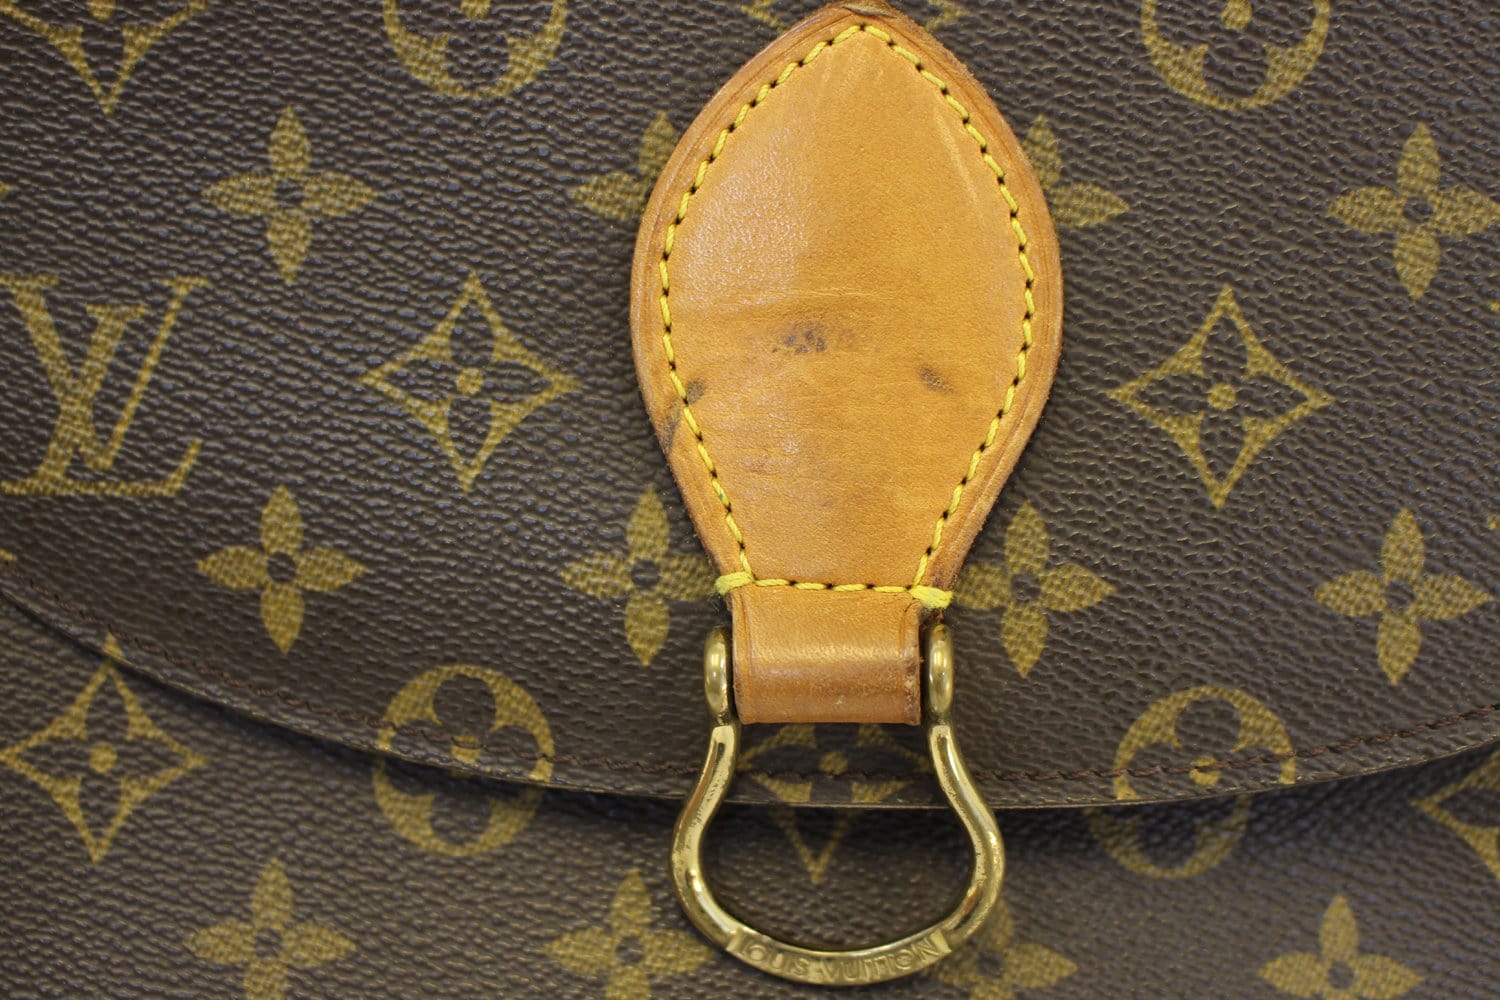 Louis Vuitton, a monogram canvas 'Saint Cloud' bag. - Bukowskis